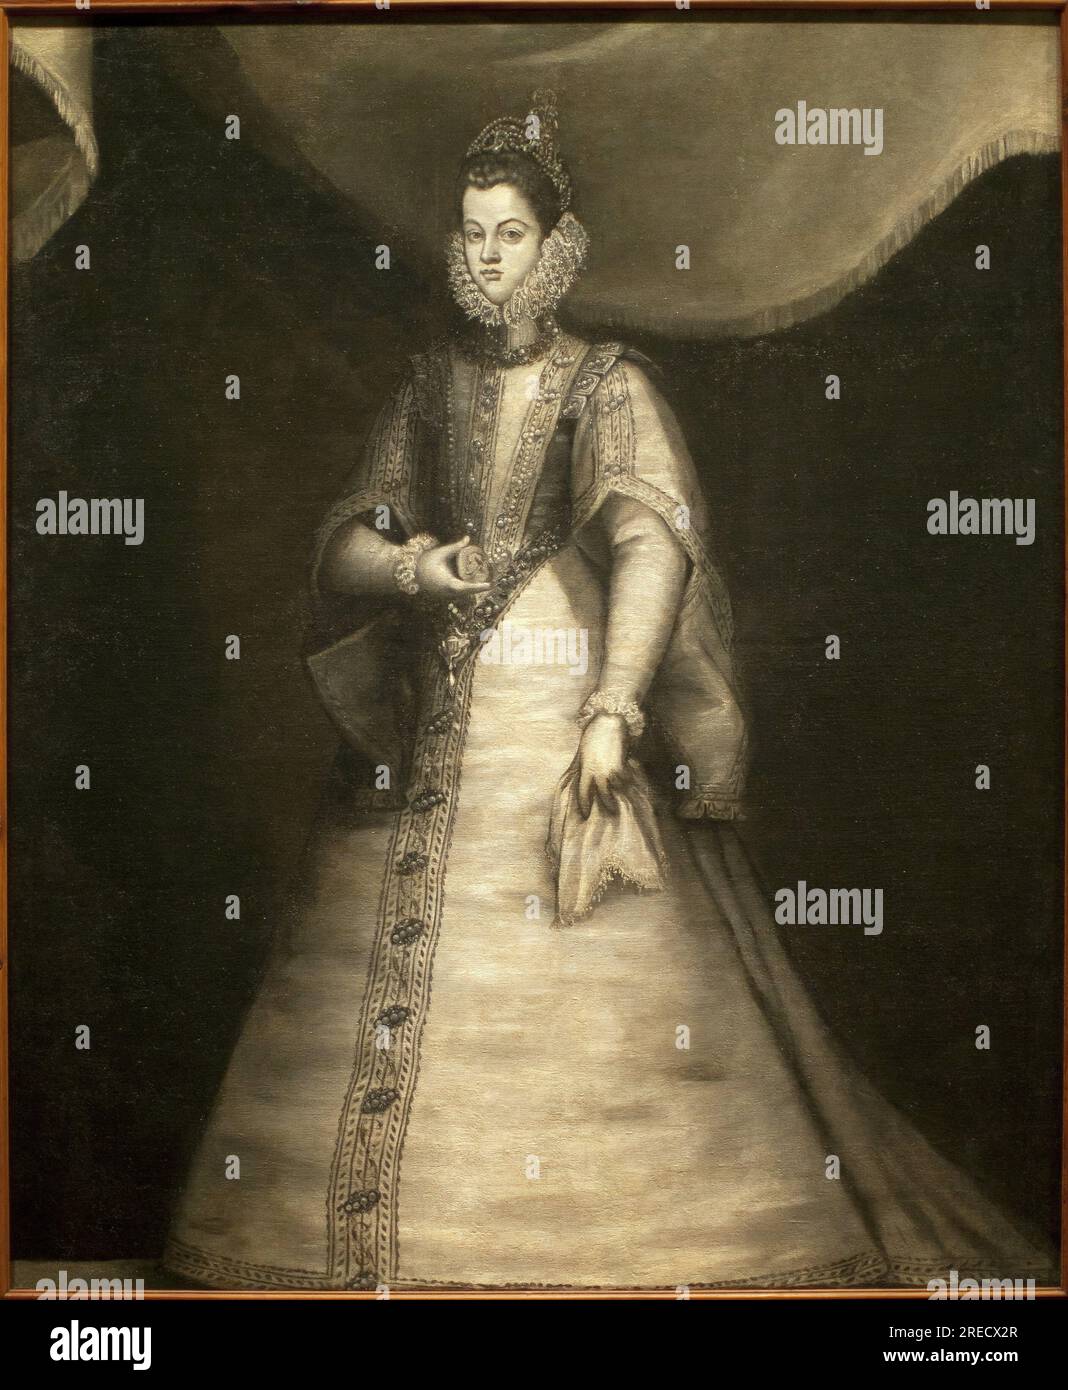 Portrait de l'infante Isabelle Claire Eugénie d'Autriche (1566-1633) (Isabelle d'Espagne). Peinture de Blas de Prado (vers 1545-1599), huile sur toile, 1583. Musée de Santa Cruz de Tolède, Espagne. Banque D'Images